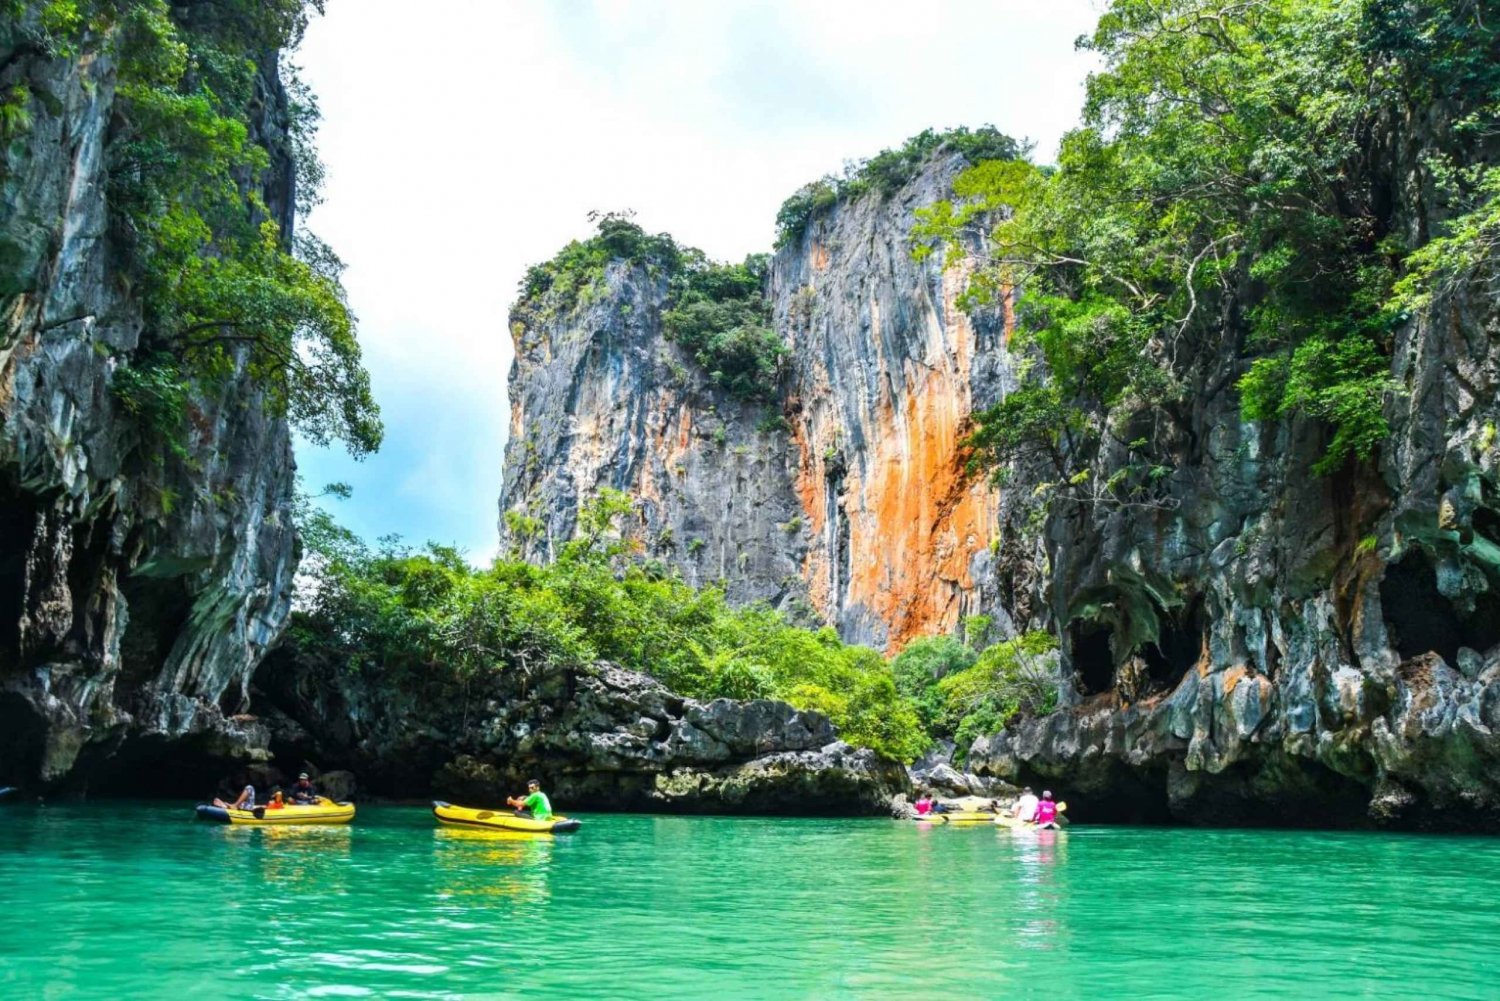 Phuket: James Bond Island med stor båt och kanotpaddling i havsgrottor